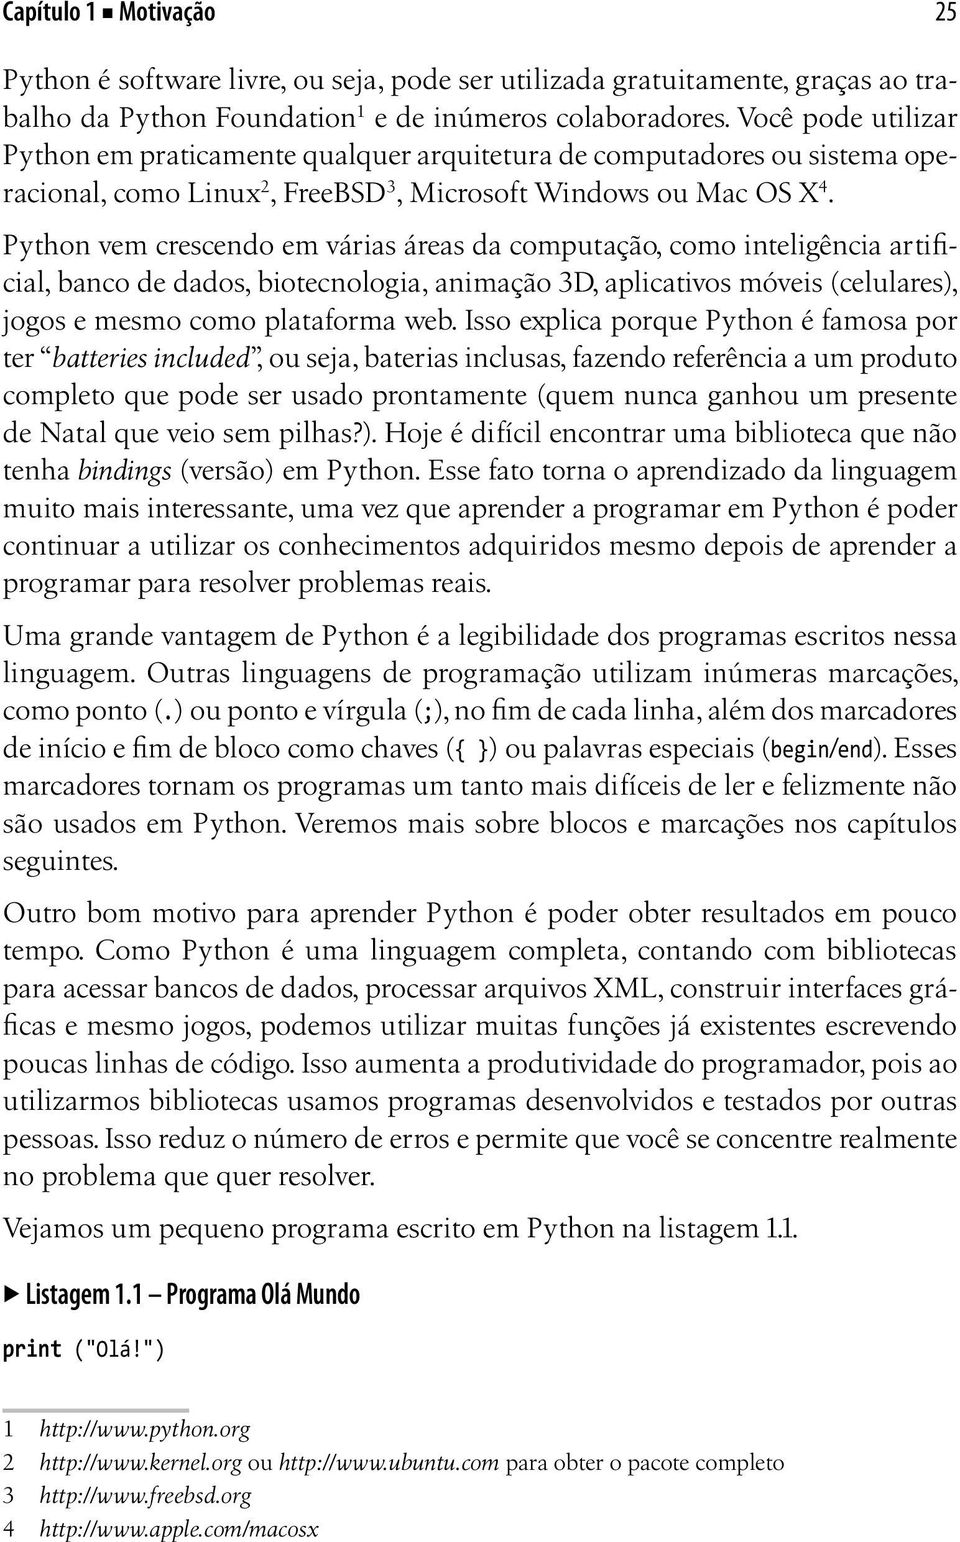 Python vem crescendo em várias áreas da computação, como inteligência artificial, banco de dados, biotecnologia, animação 3D, aplicativos móveis (celulares), jogos e mesmo como plataforma web.